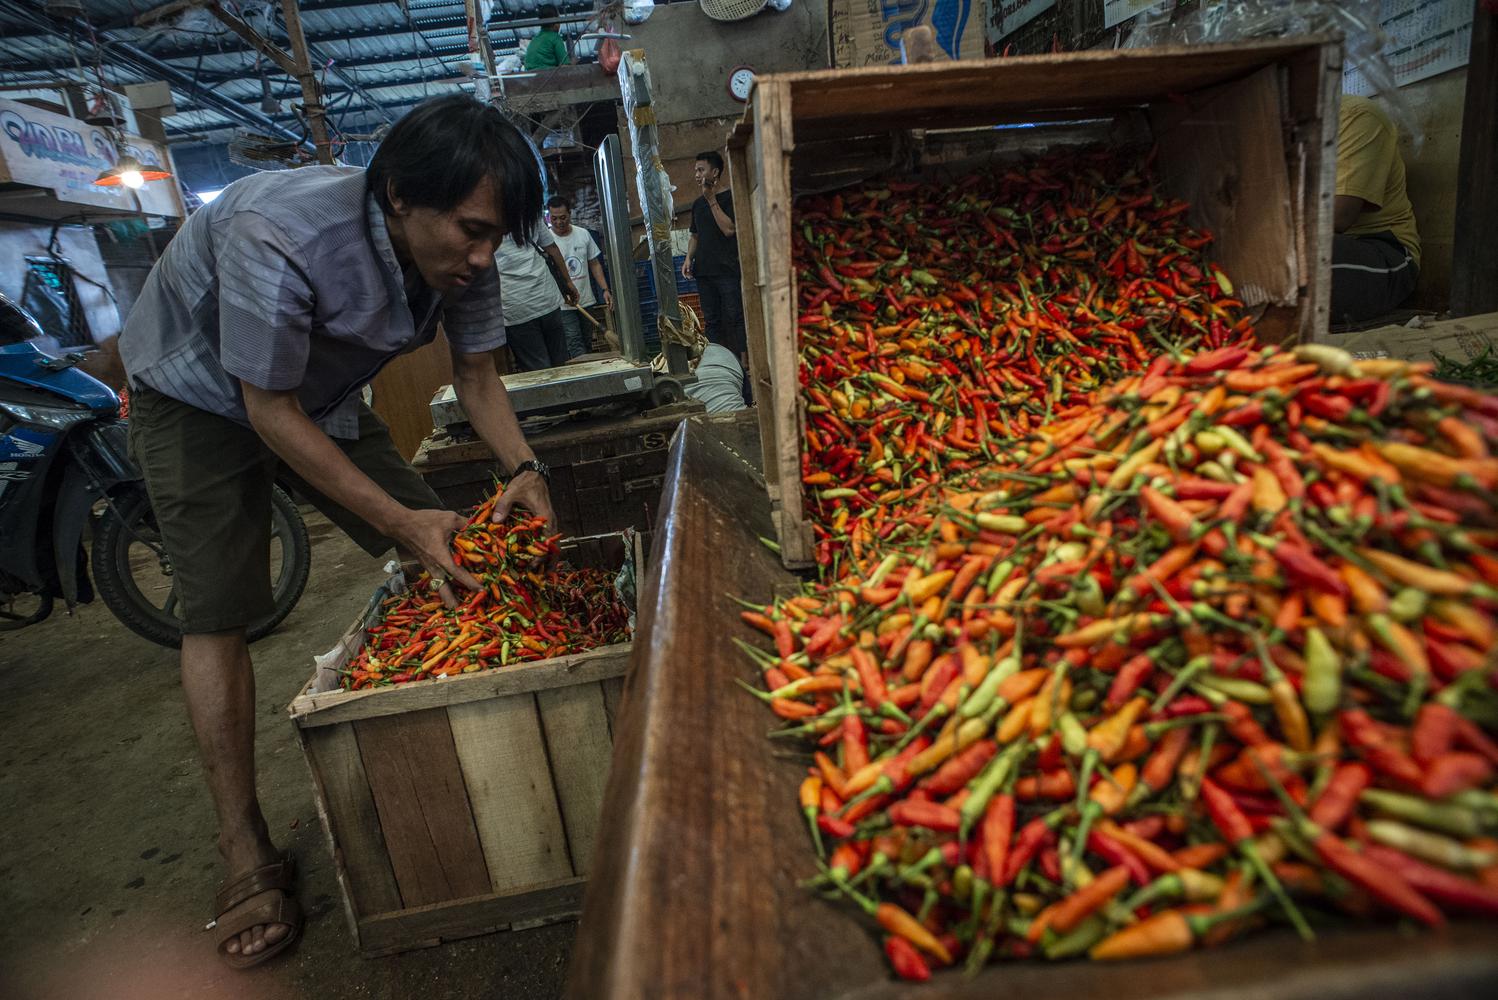 Pedagang memilah cabai rawit merah yang dijajakannya di Pasar Induk Kramat Jati, Jakarta, Selasa (14/1/2020). Sejumlah pedagang mengatakan harga cabai di wilayah Jakarta mengalami kenaikan secara variatif seperti cabai keriting dari Rp55 ribu menjadi Rp70